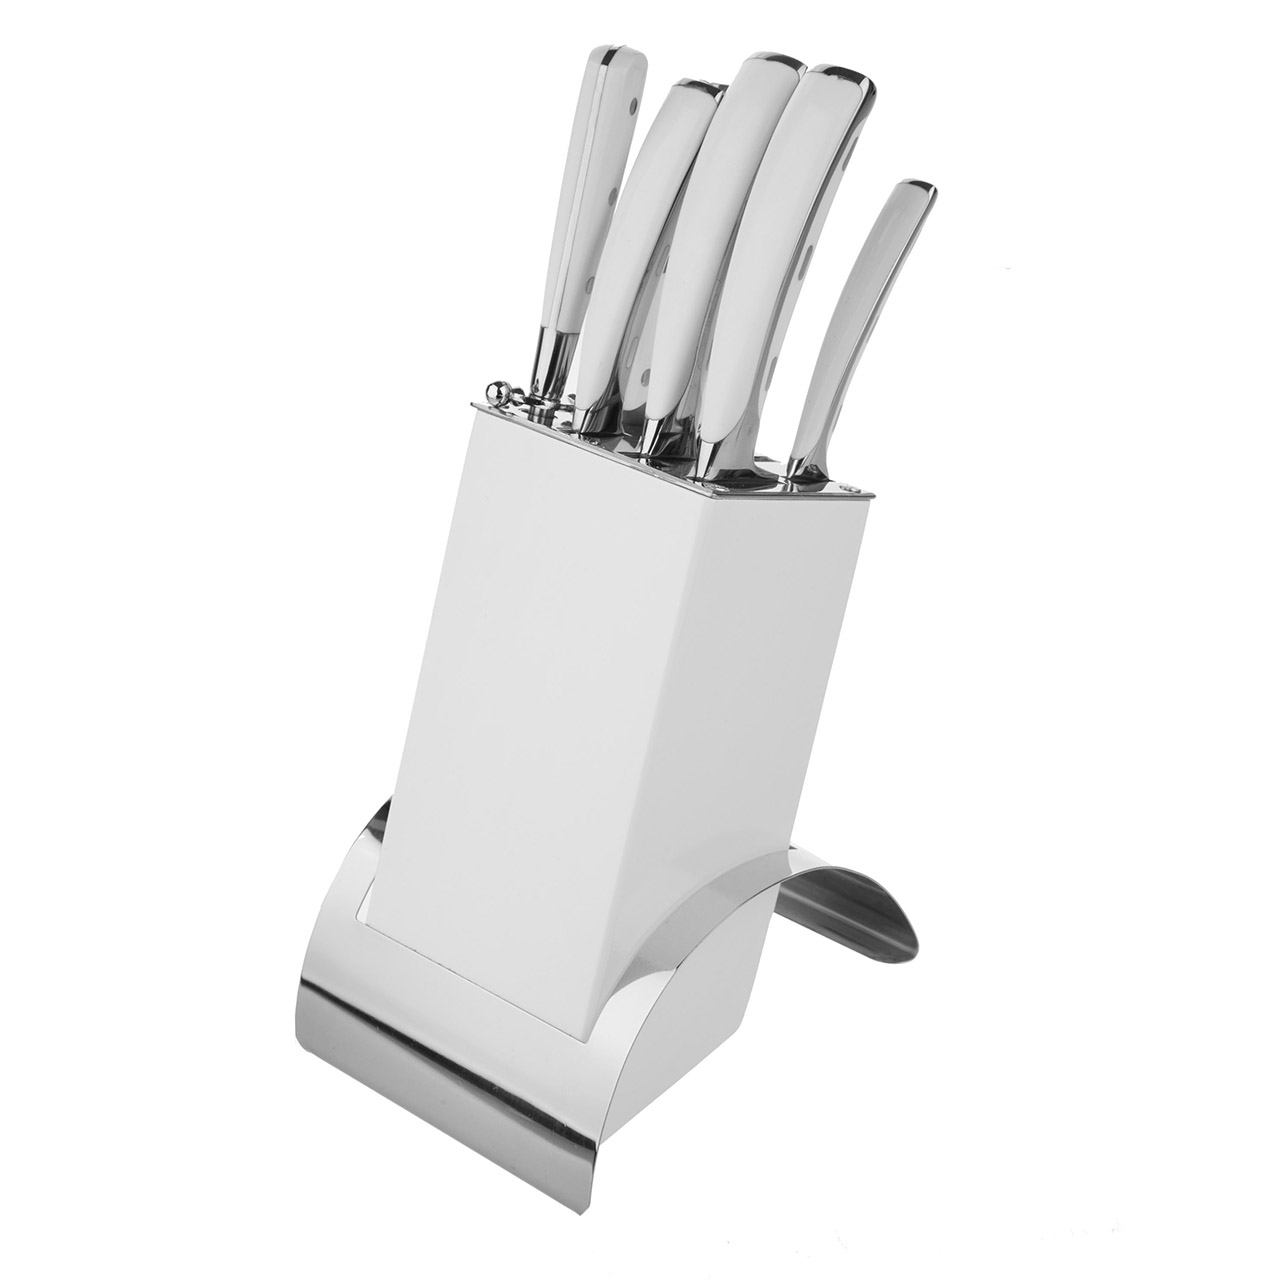 ست چاقو آشپزخانه 8 پارچه پرینس مدل DY053BS011